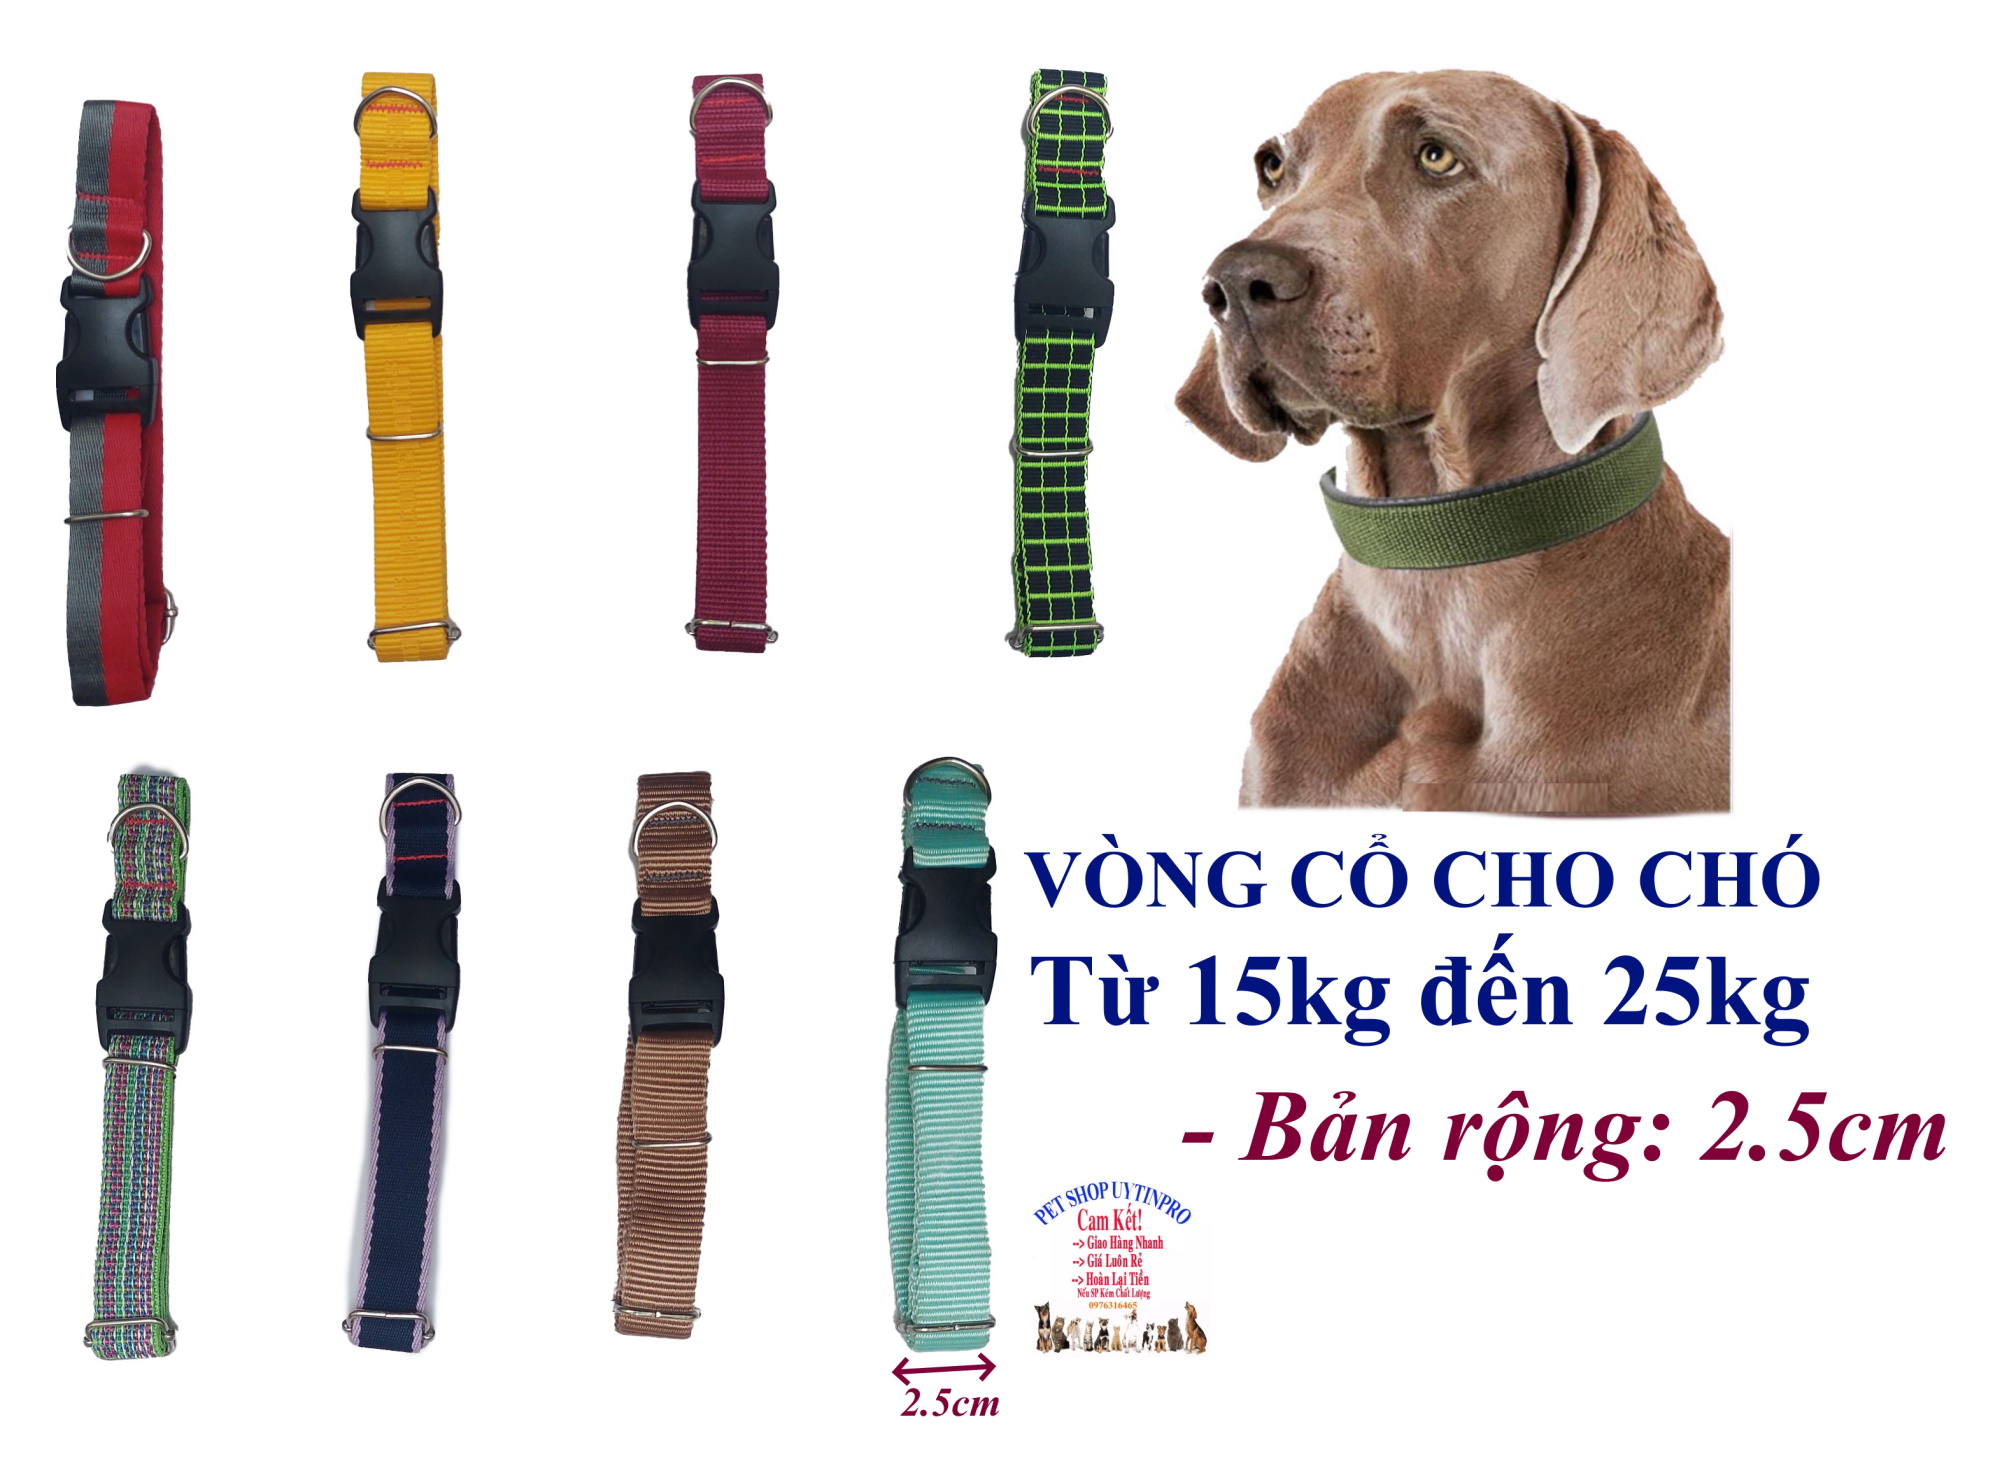 Vòng cổ cho Chó từ 15kg đến 25kg Bản rộng 2.5cm Chất liệu dù cao cấp, Dày, Chắc chắn, An toàn cho thú cưng, SX tại VN